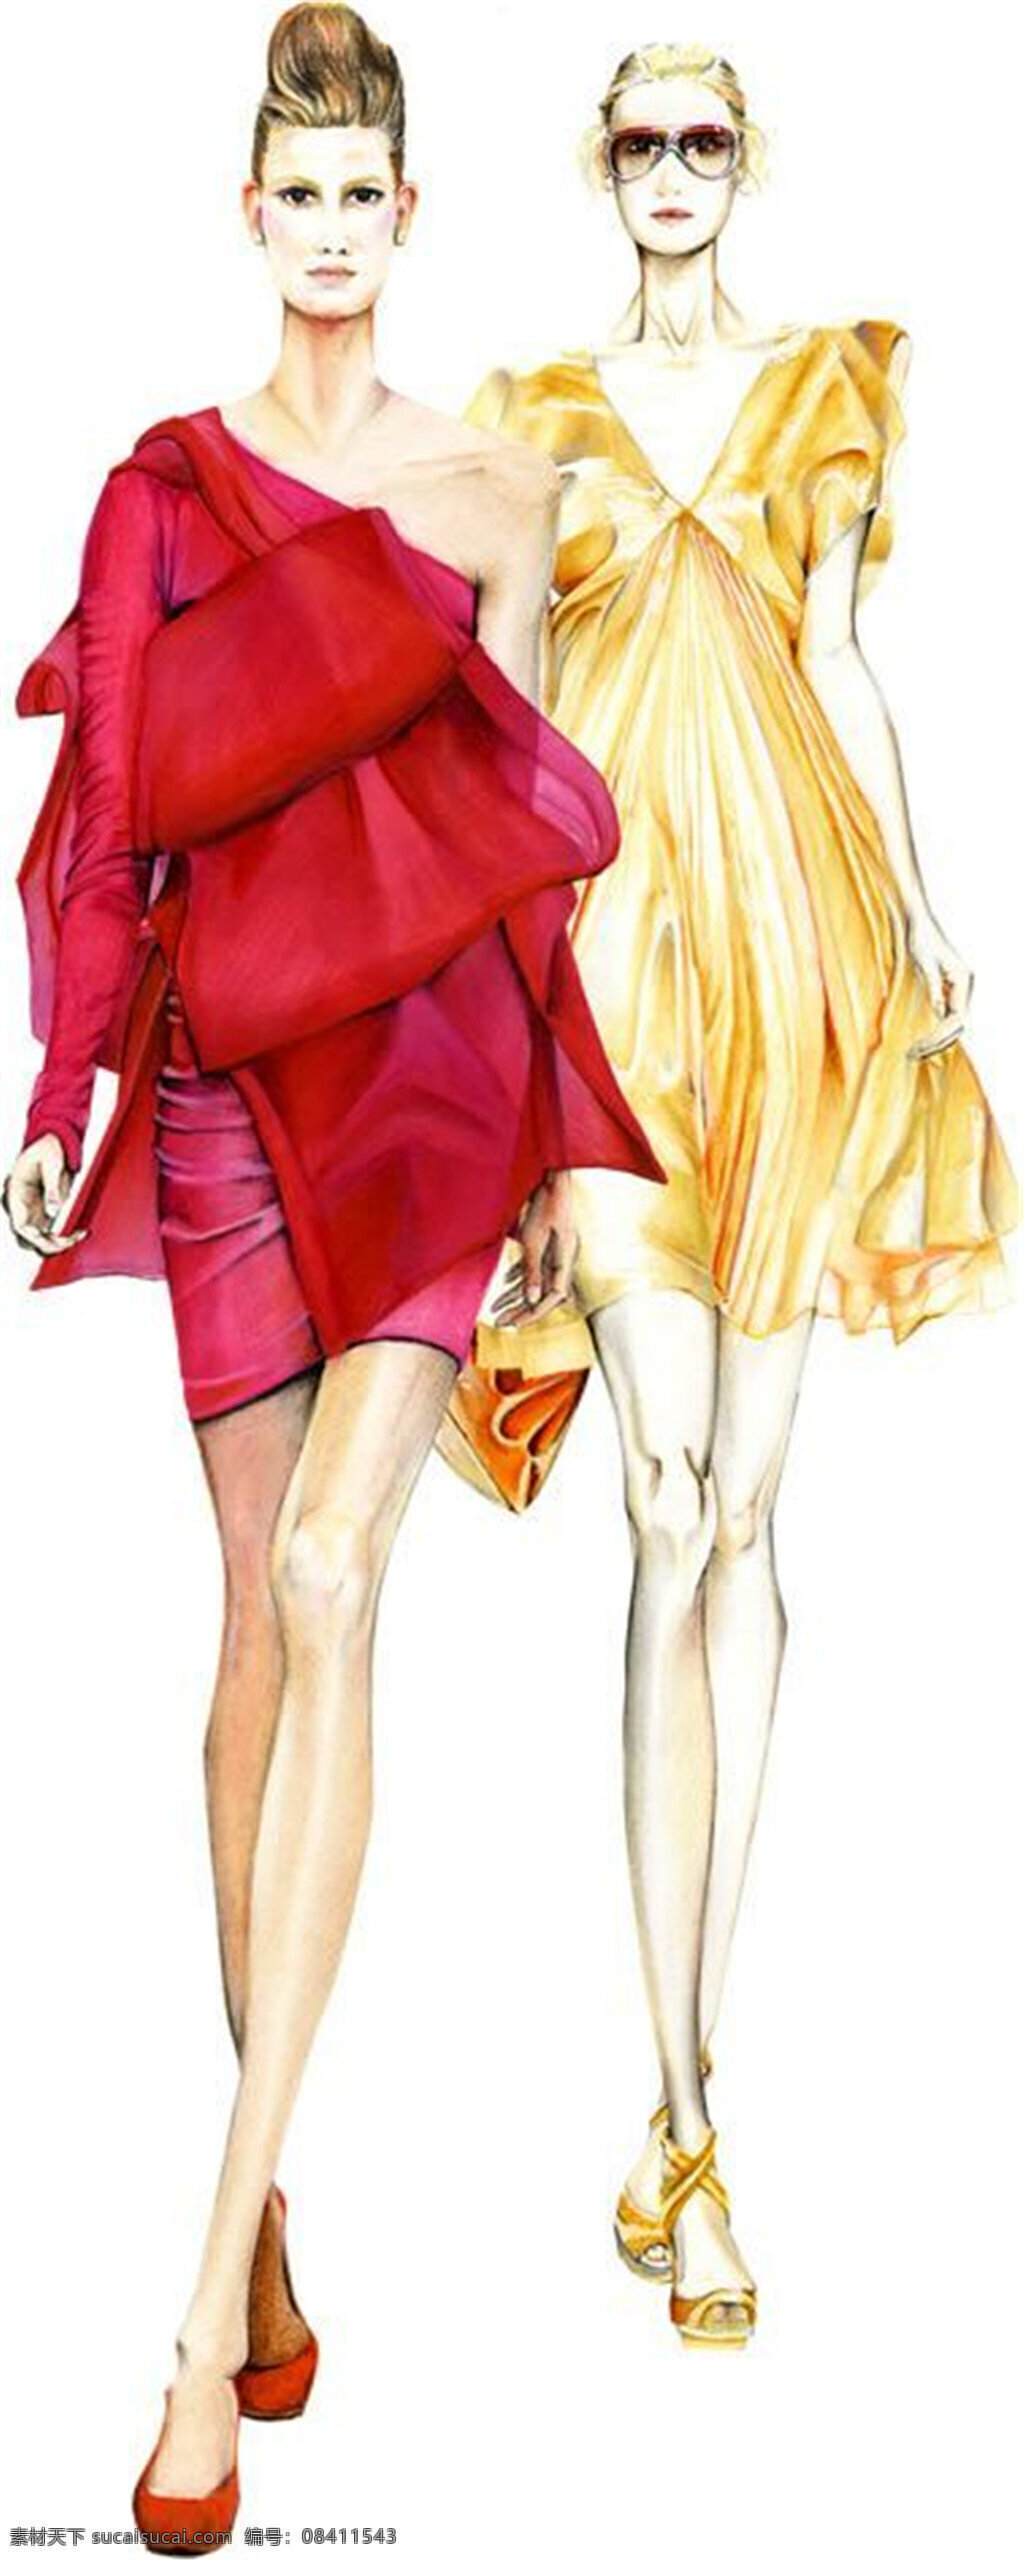 美丽 宴会 风格 艳 色 礼服 女装 效果图 服装设计 高跟鞋 红色礼服 黄色礼服 墨镜